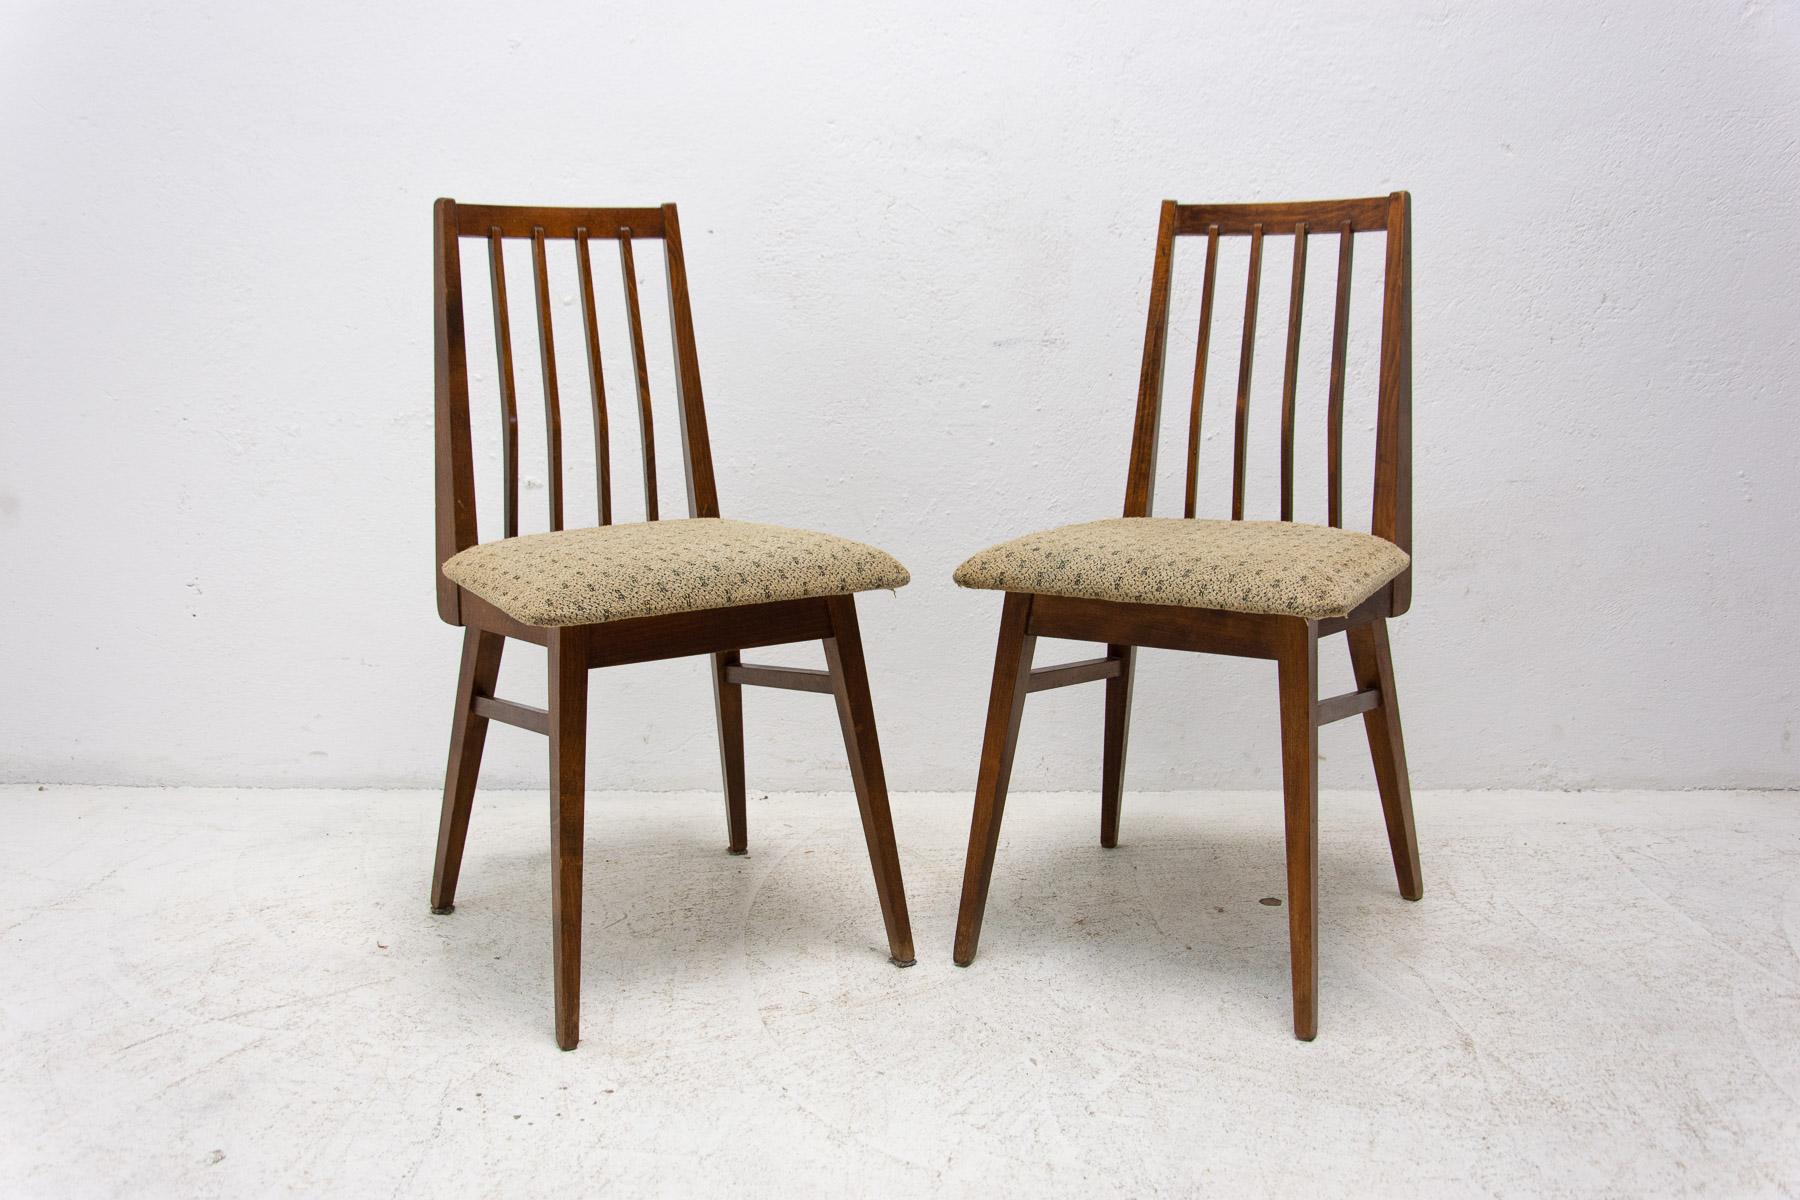 Ein Paar gepolsterte Esszimmerstühle, hergestellt in der ehemaligen Tschechoslowakei in den 1970er Jahren. Die Stühle sind aus Buchenholz gefertigt. Sehr interessante Formgebung. Die Polsterung und das Holz sind in gutem Vintage-Zustand, mit